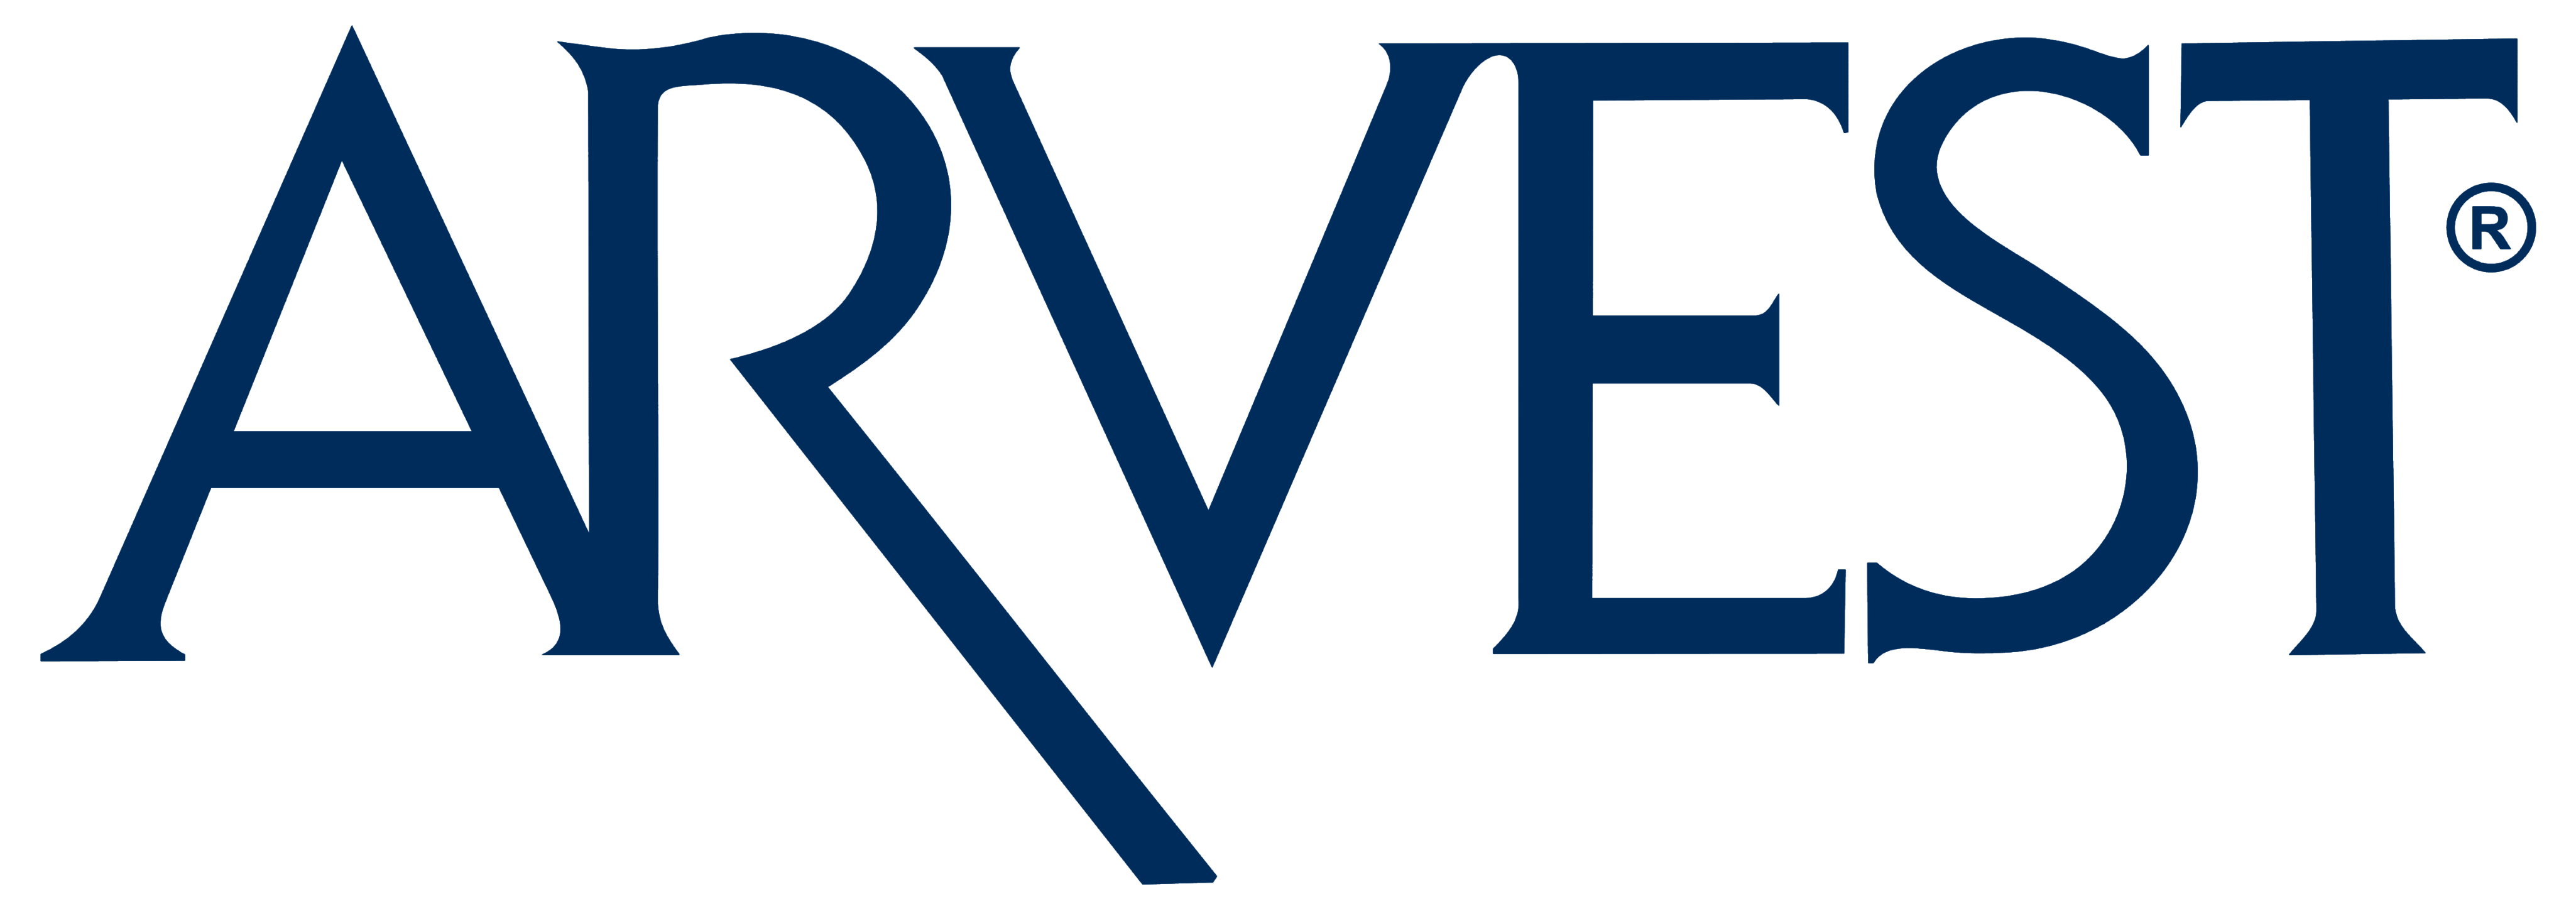 Arvest logo, logotype